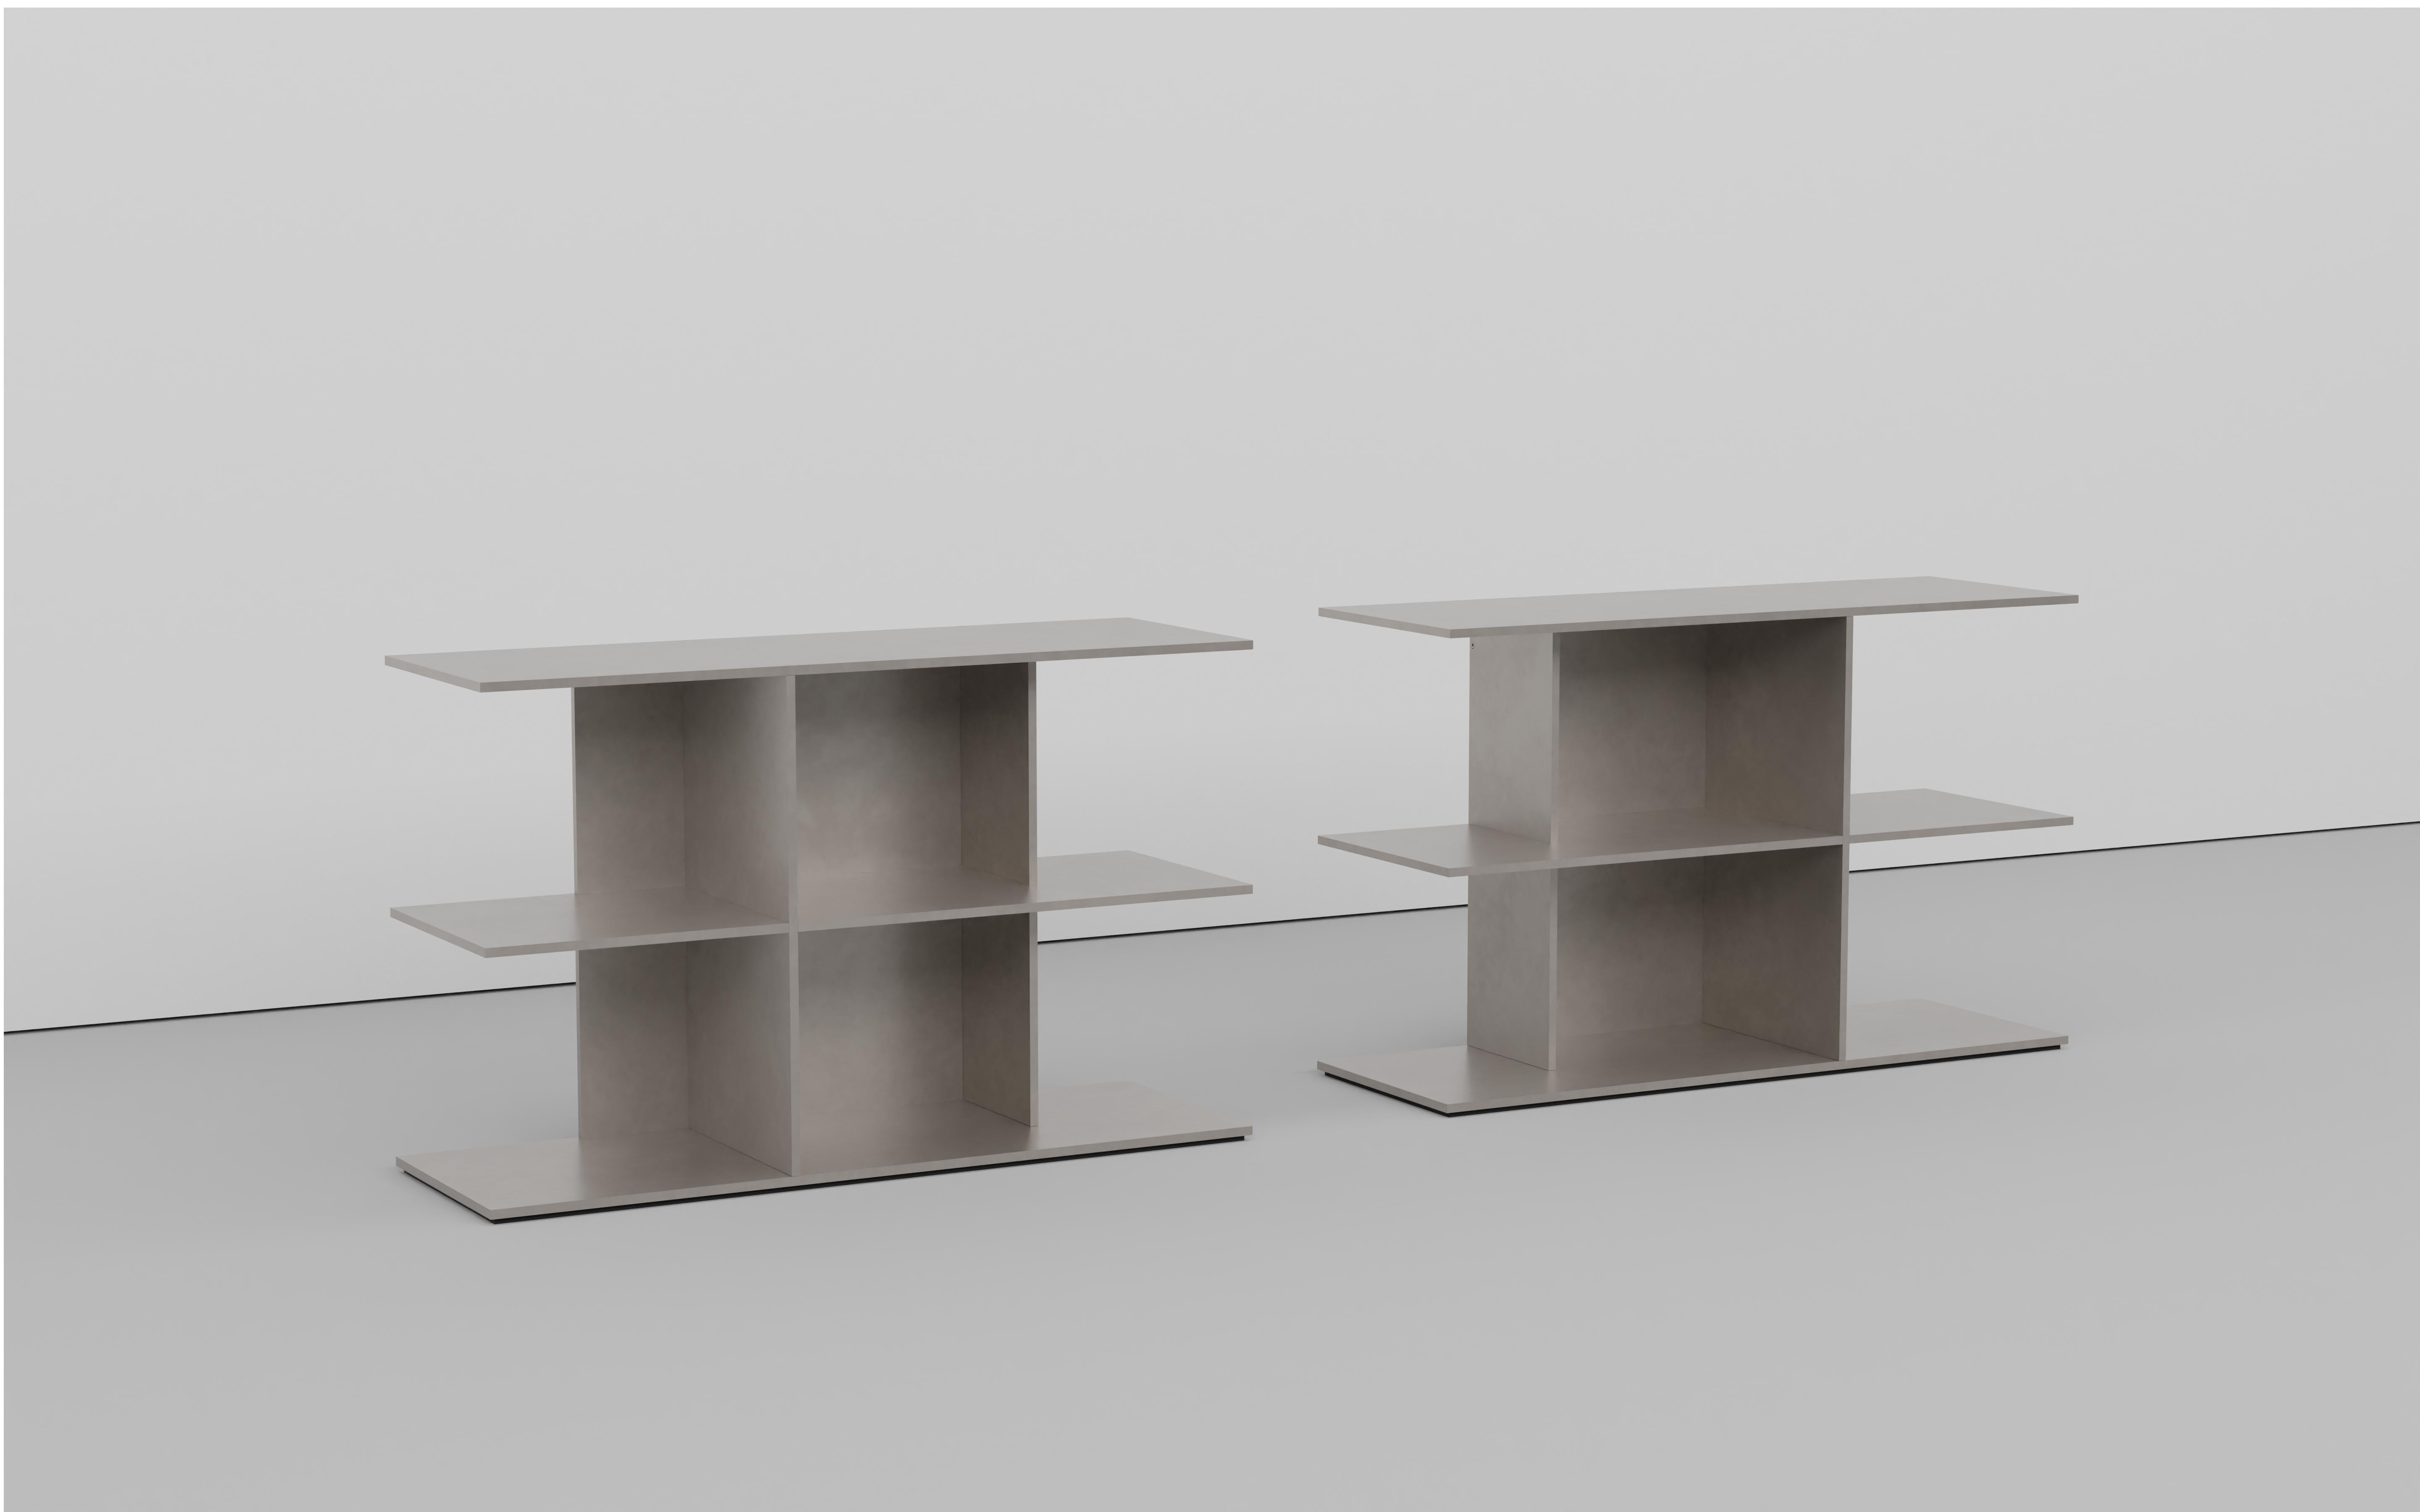 Table minimaliste en plaques d'aluminium de 3 à 8 pouces d'épaisseur assemblées par boulonnage. La face inférieure comporte une feuille de caoutchouc découpée et encastrée avec une étiquette signée. Disponible en version miroir à gauche et à droite.